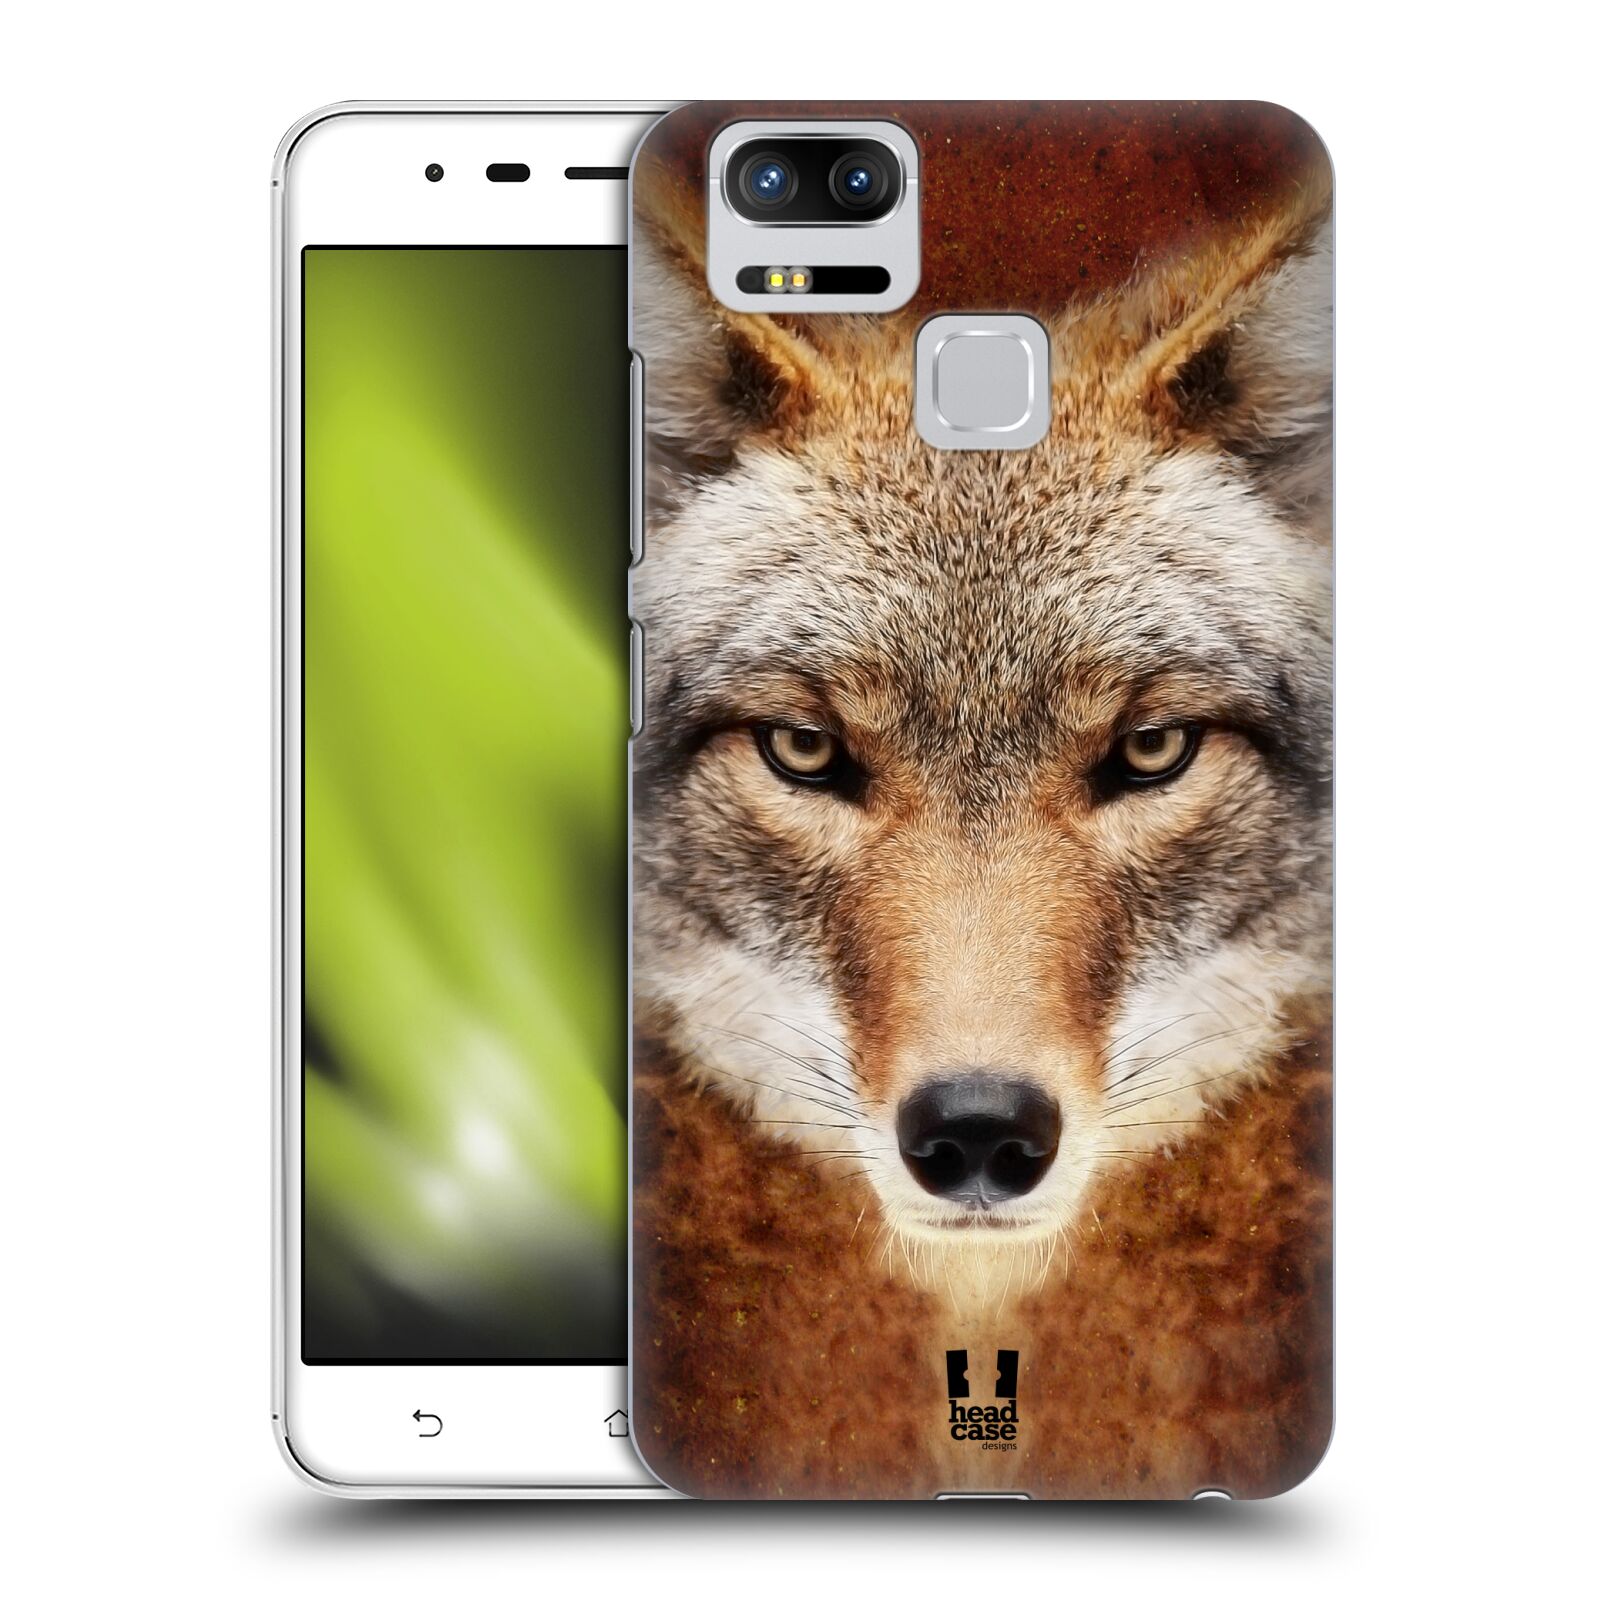 HEAD CASE plastový obal na mobil Asus Zenfone 3 Zoom ZE553KL vzor Zvířecí tváře kojot